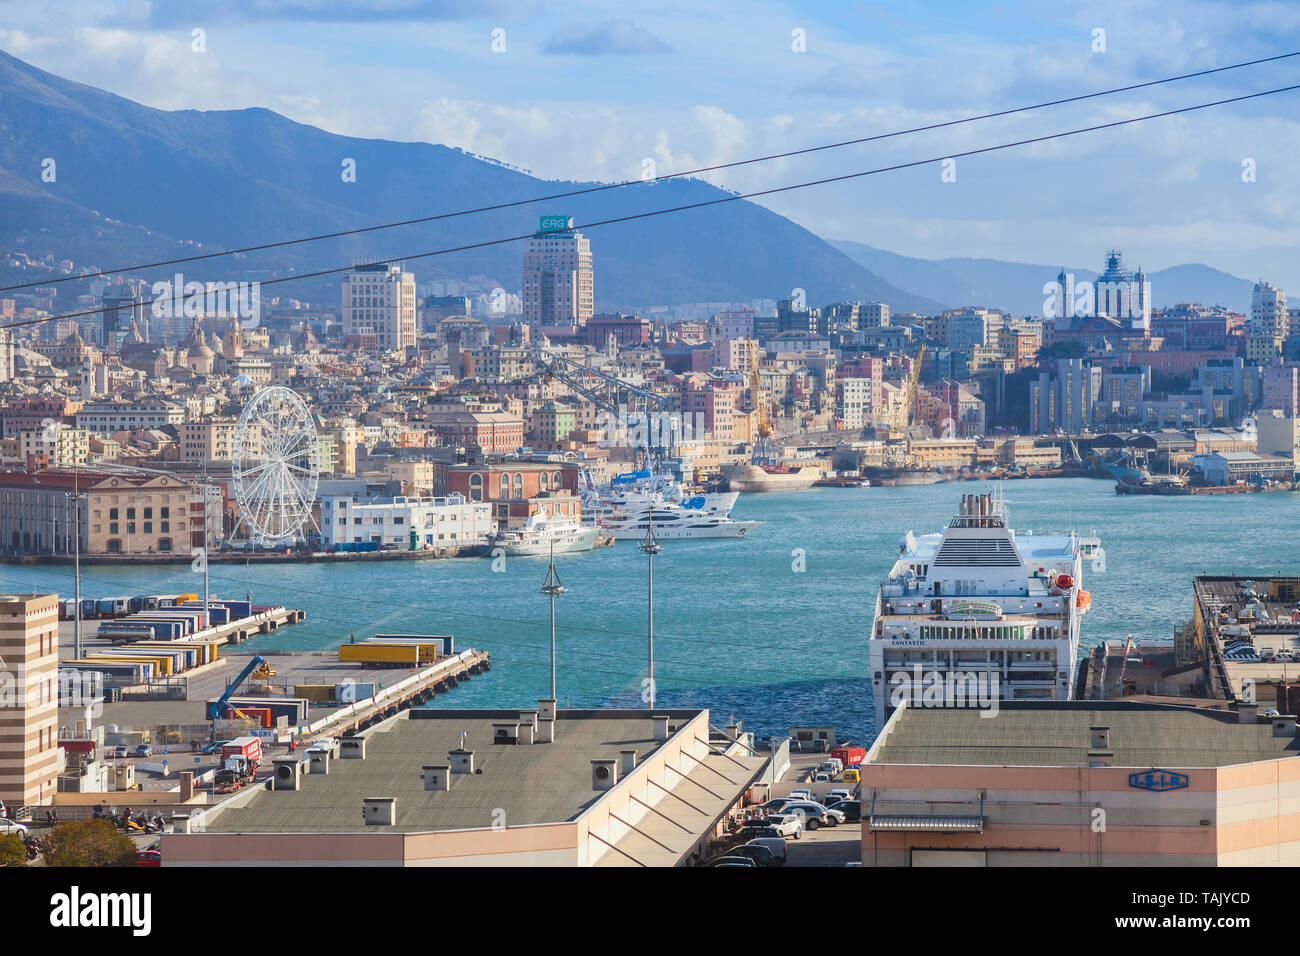 Genova, Italy - January 18, 2018: Genova port view with moored ships Stock Photo